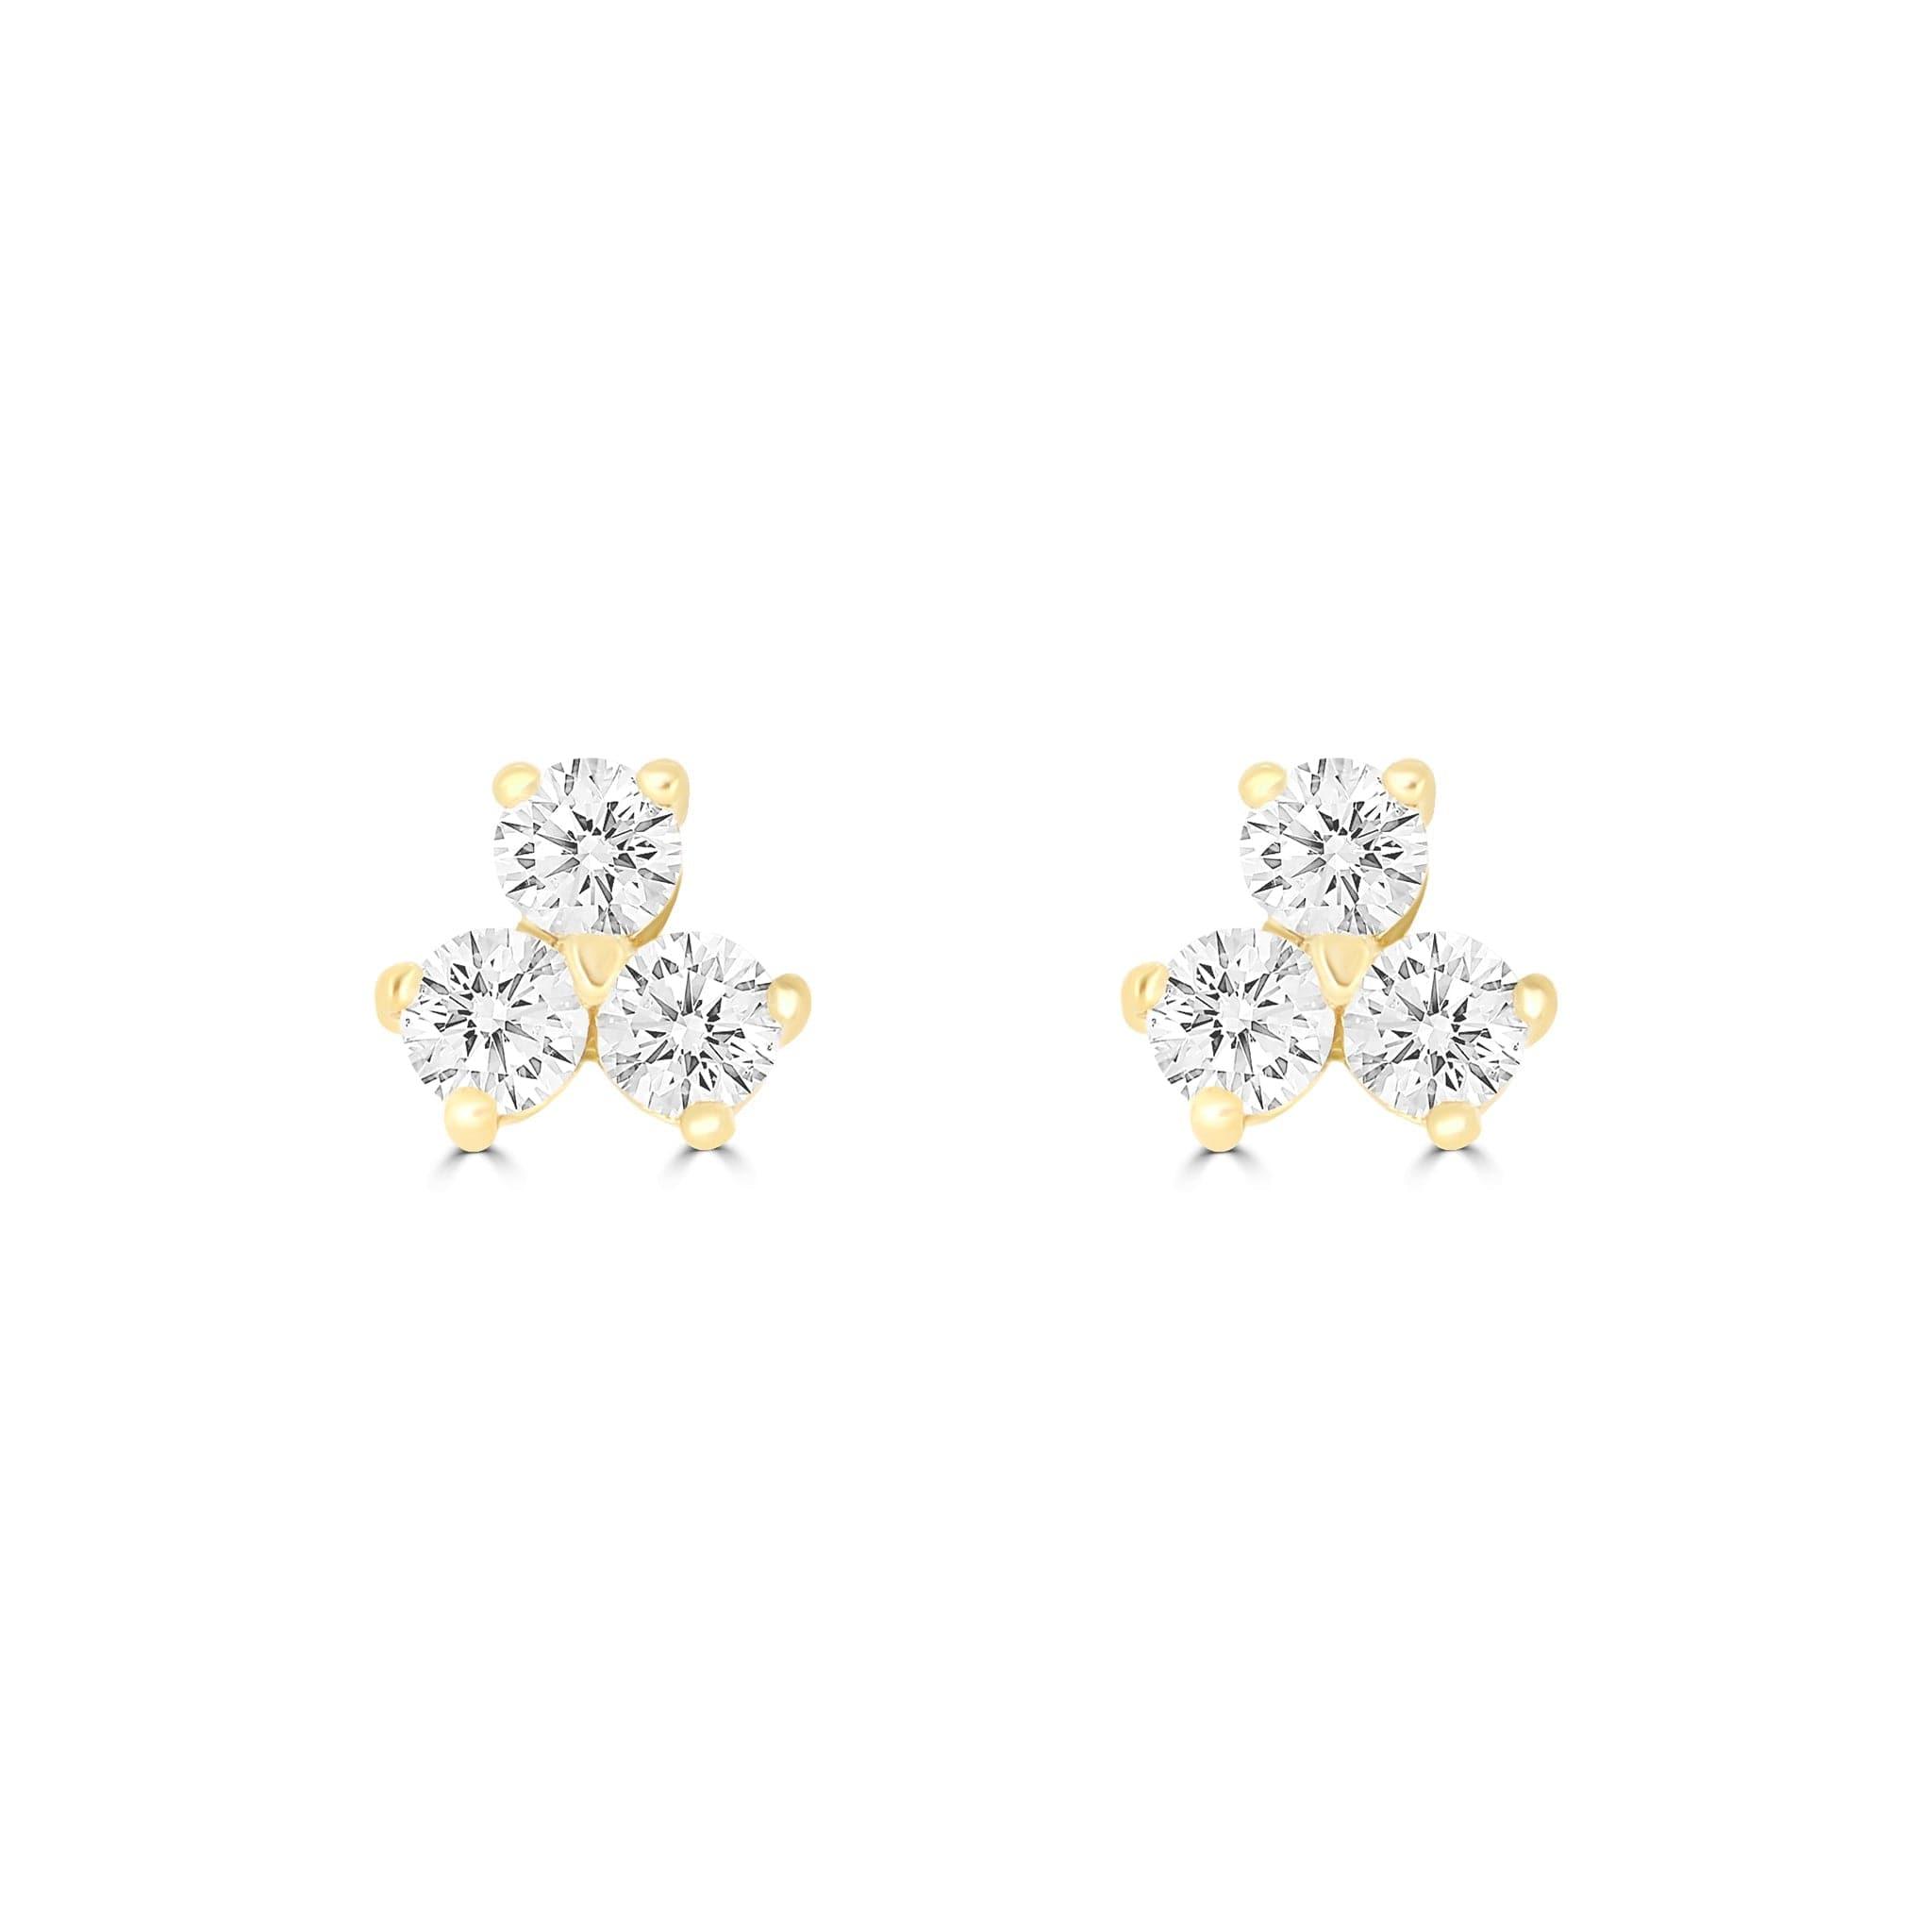 Trilogy Diamond Earrings